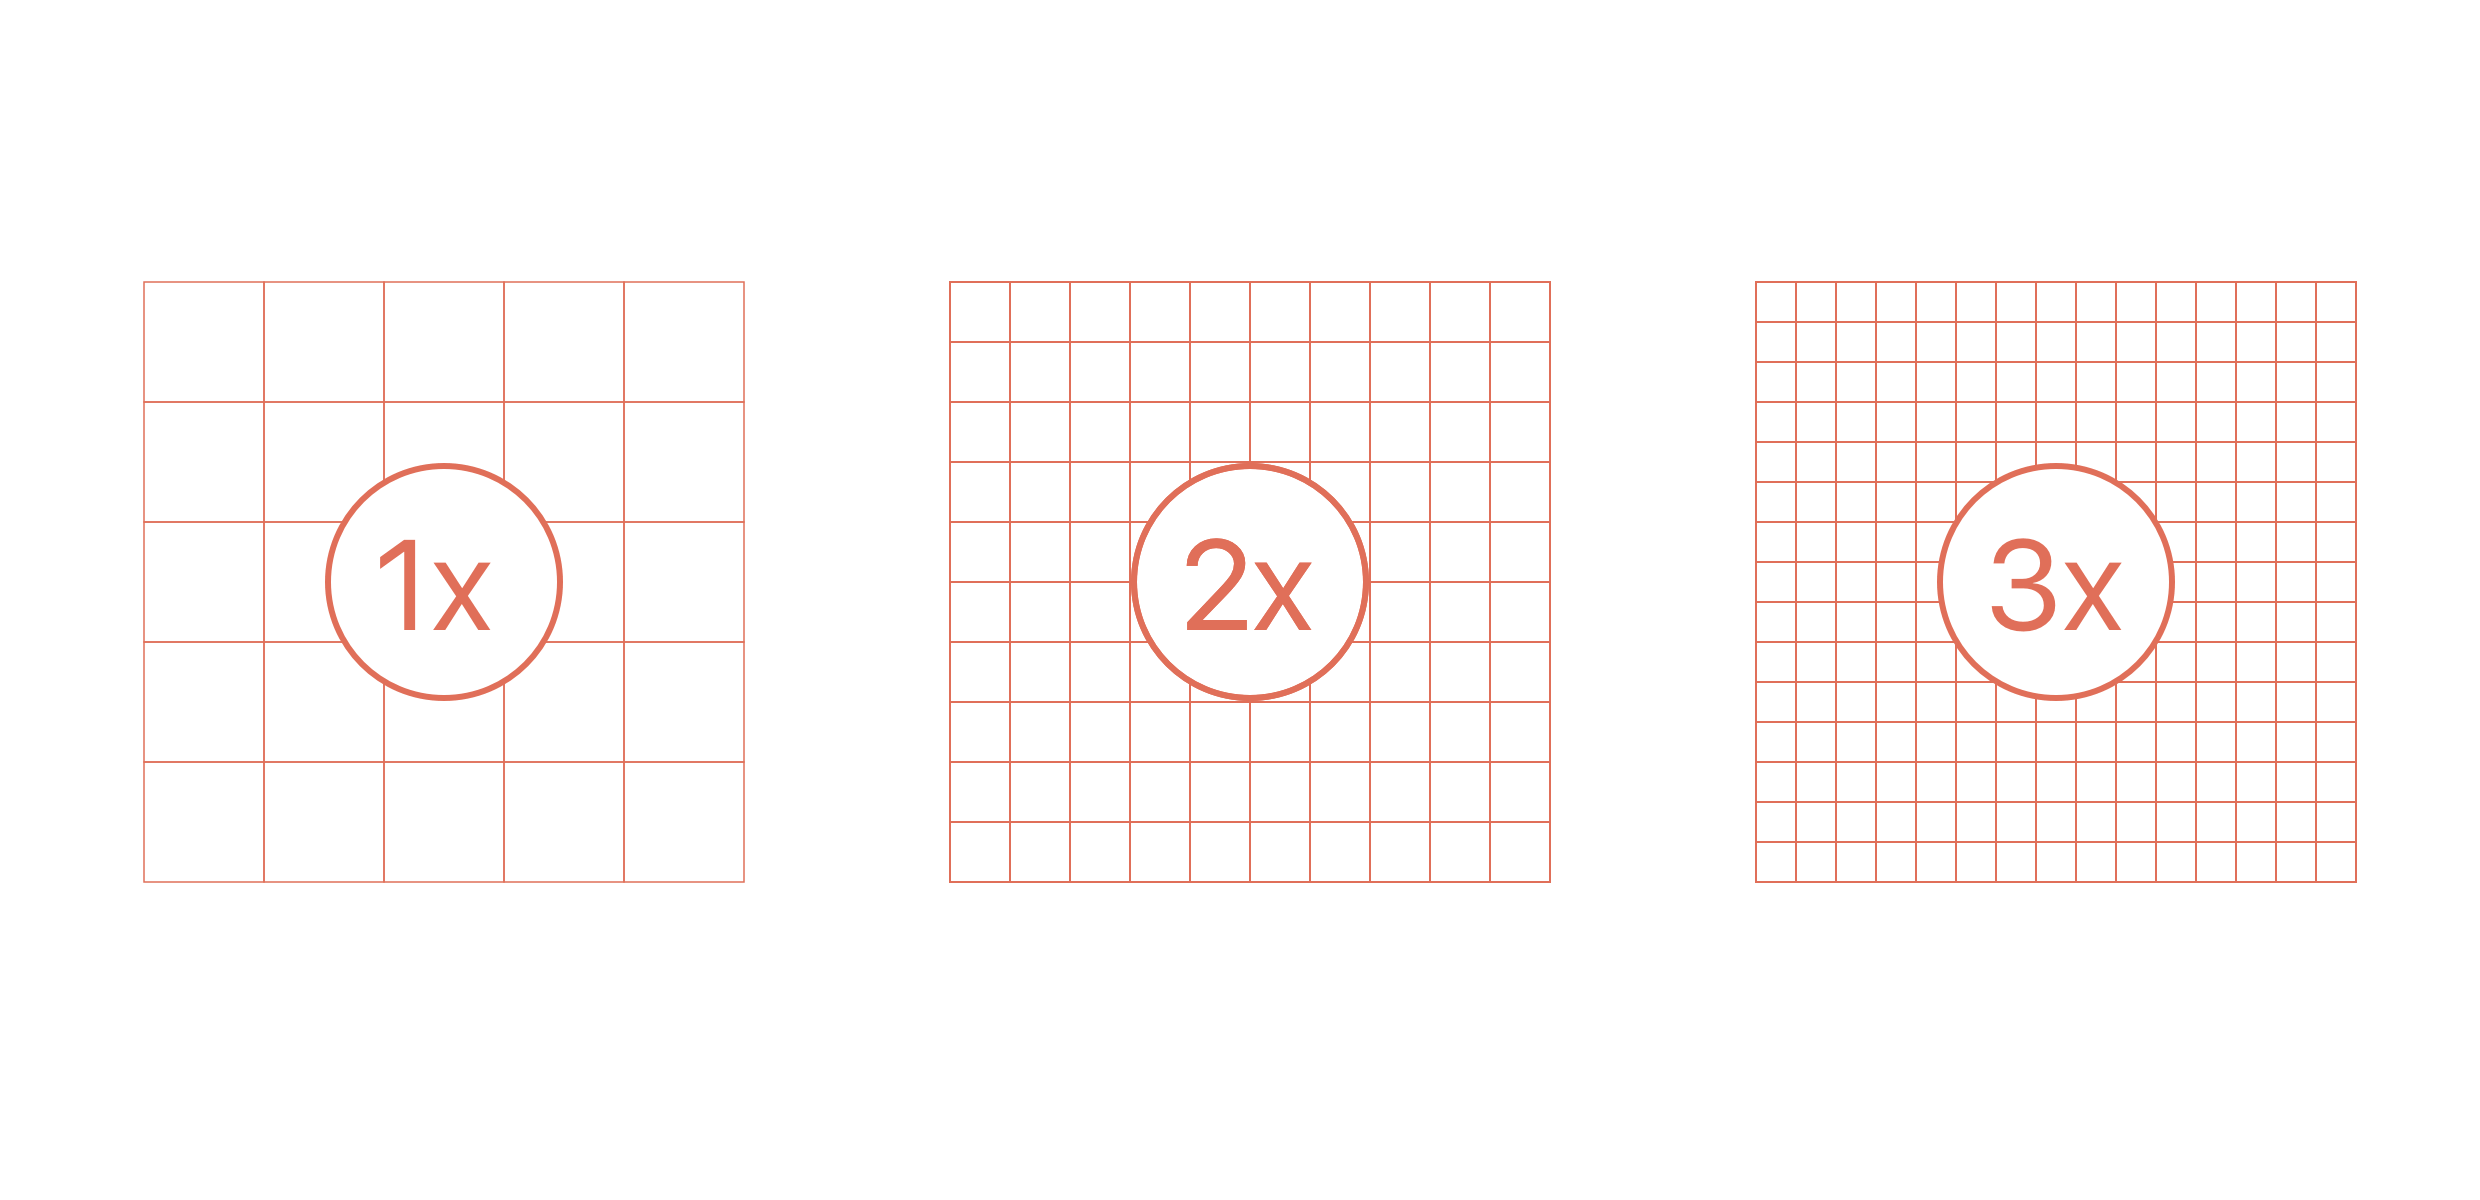 A line diagram depicting a pixel density